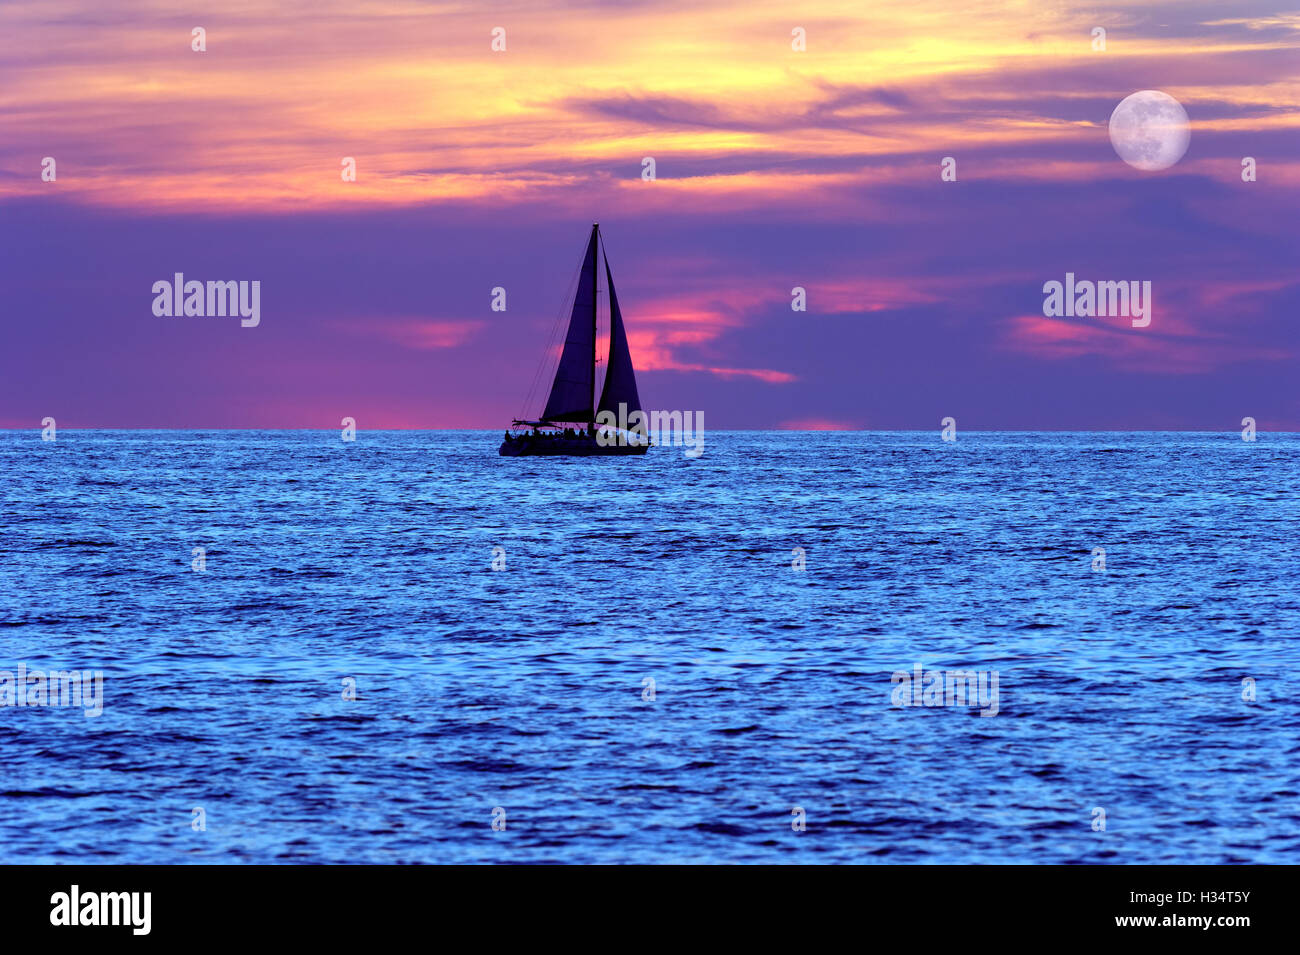 Voilier coucher de lune est une silhouette d'un bateau naviguant au bord de l'eau avec toutes voiles dehors en tant que la lune se lève dans le ciel du soir Banque D'Images